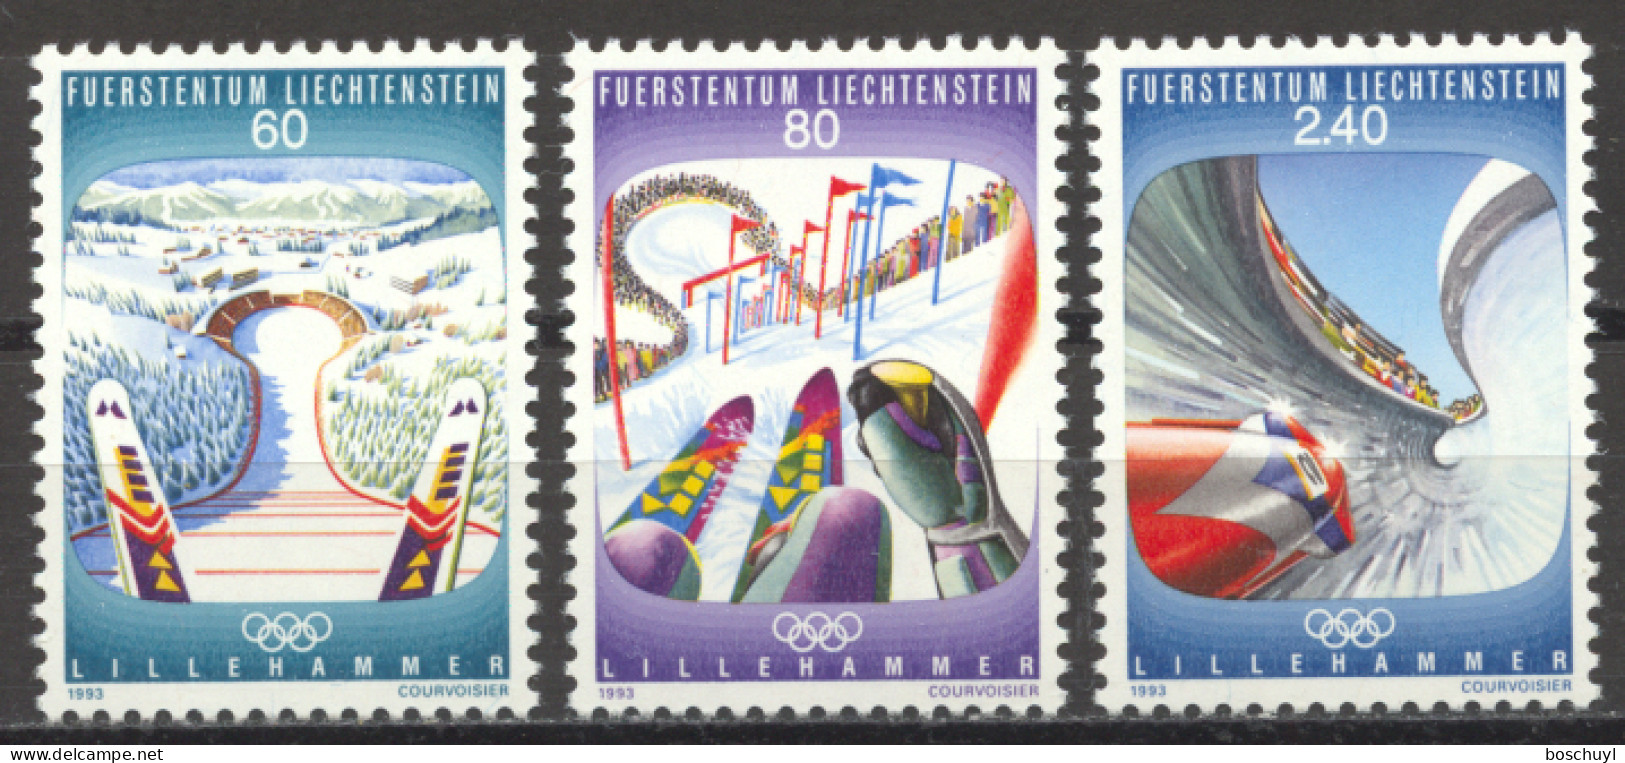 Liechtenstein, 1993, Olympic Winter Games Lillehammer, Sports, MNH, Michel 1076-1078 - Ongebruikt